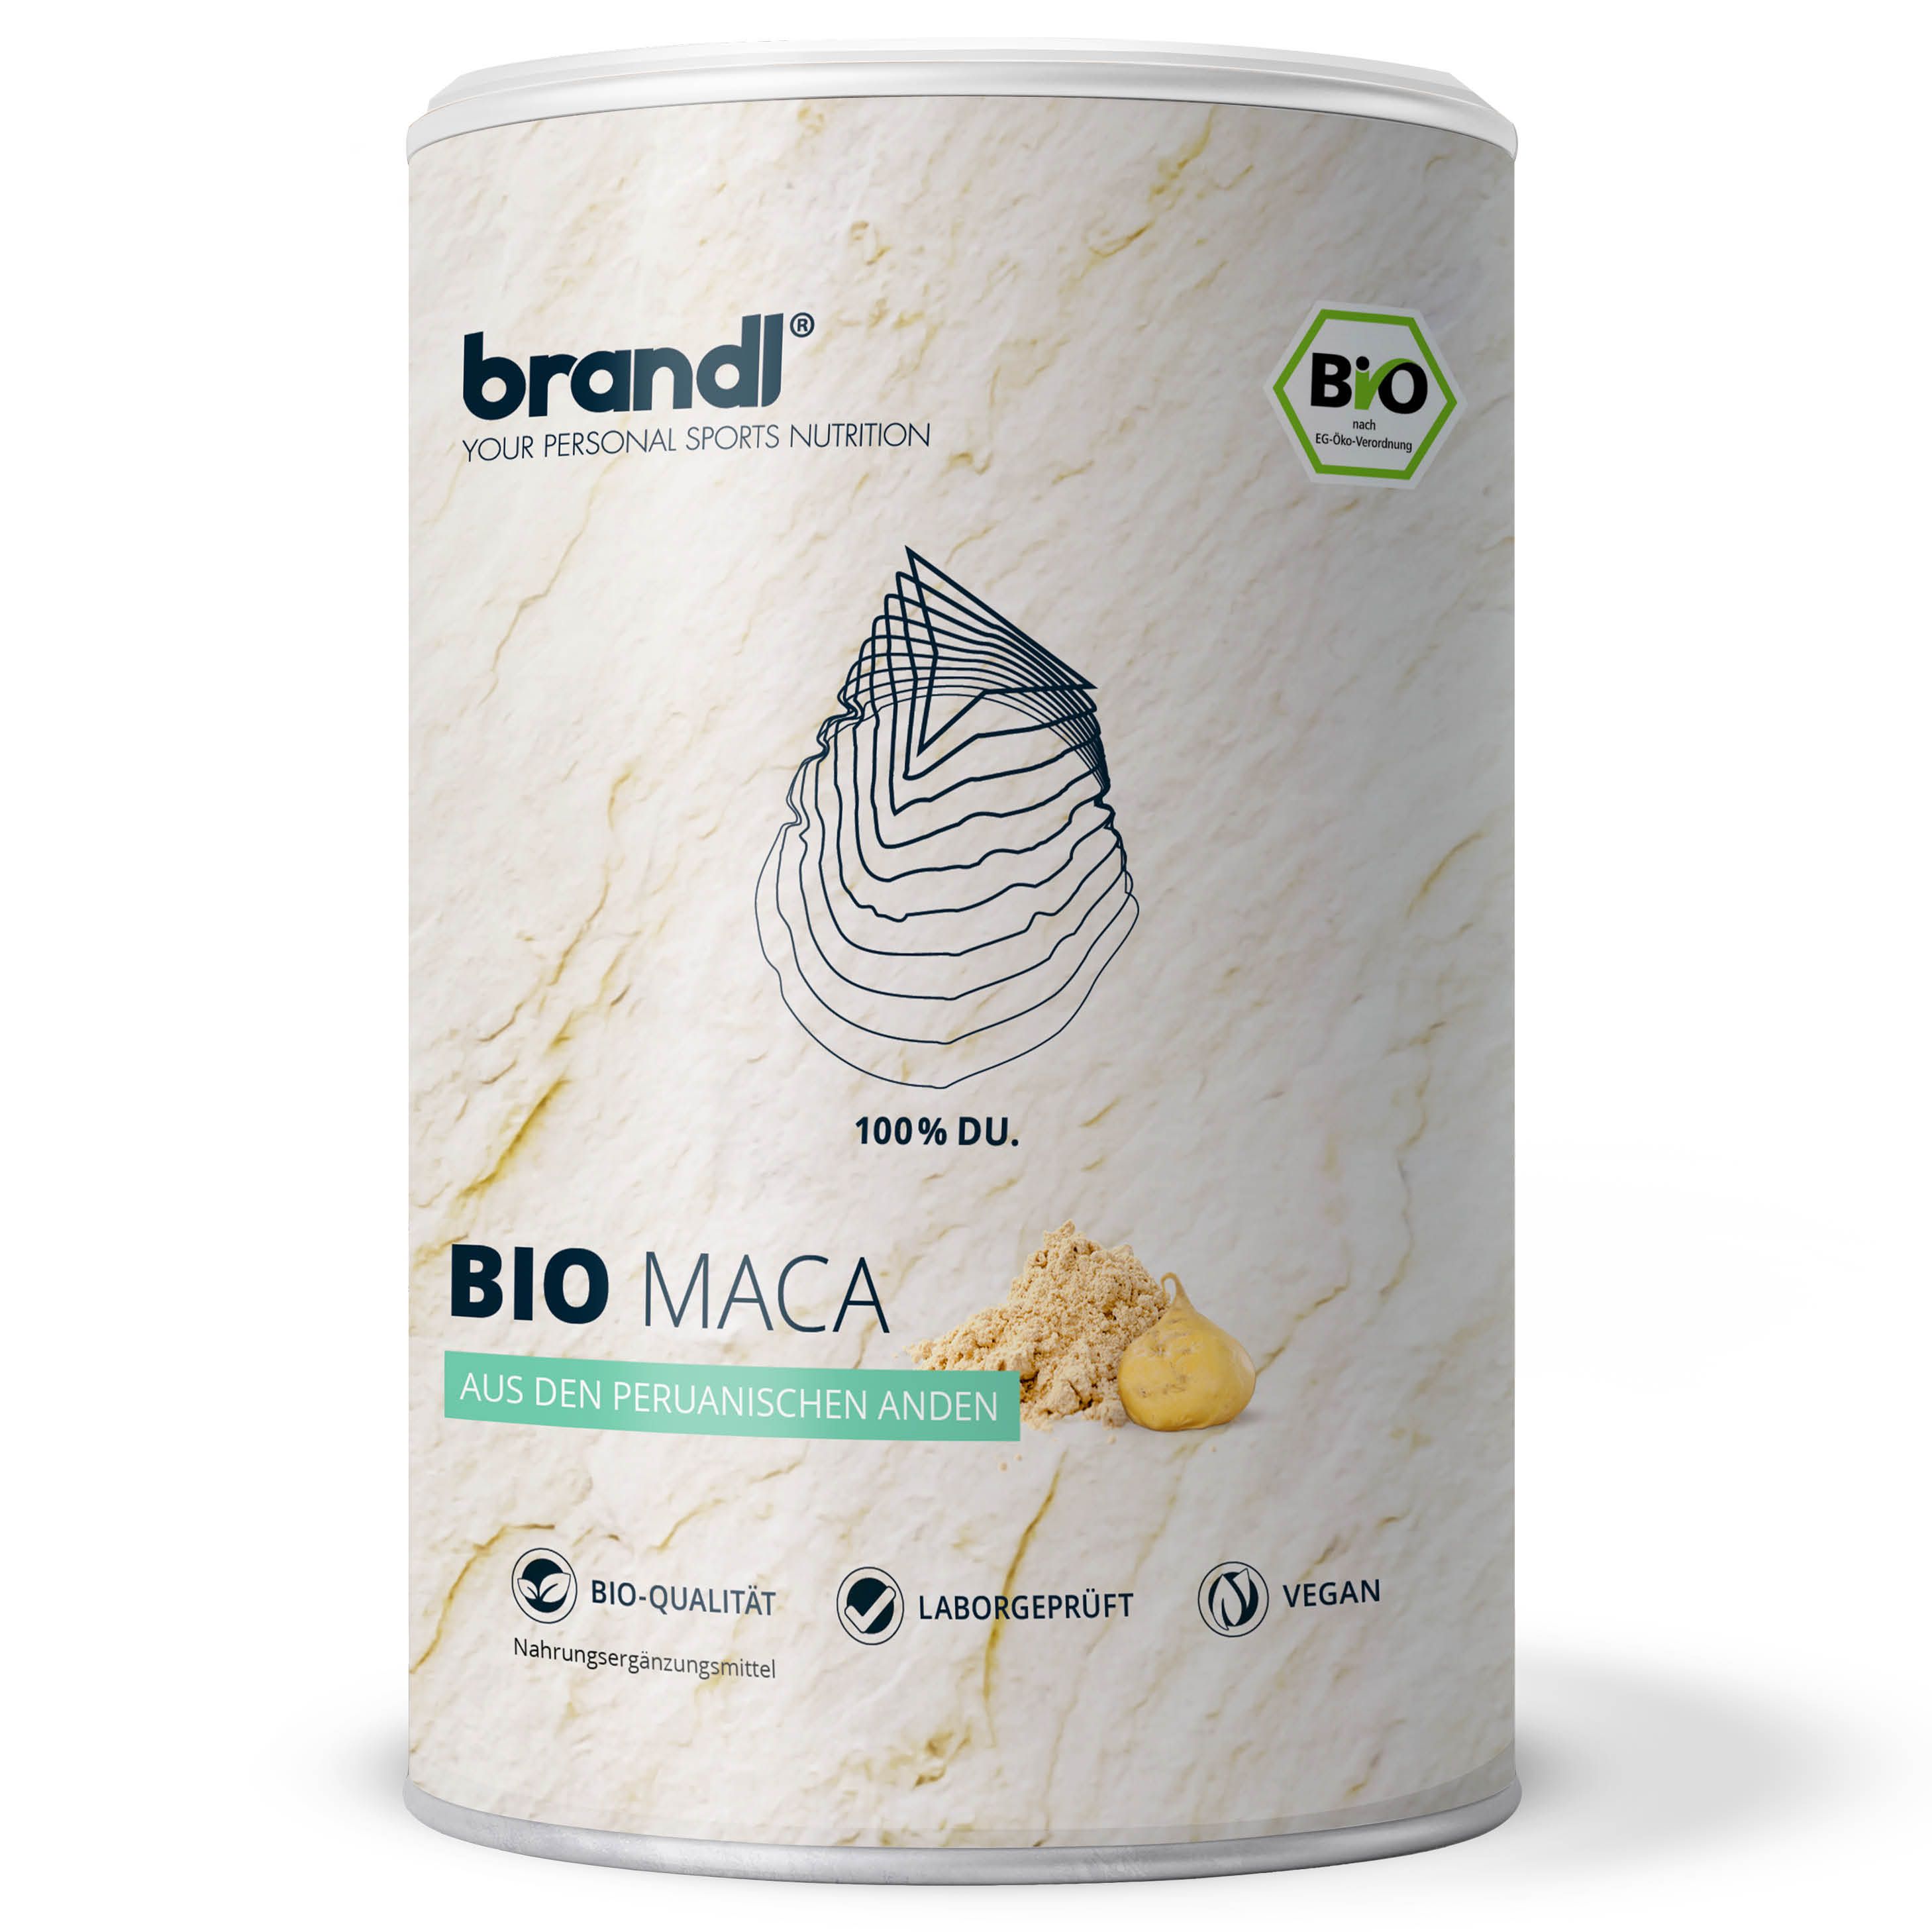 brandl® Maca Pulver Bio (maca powder) von der Maca Wurzel